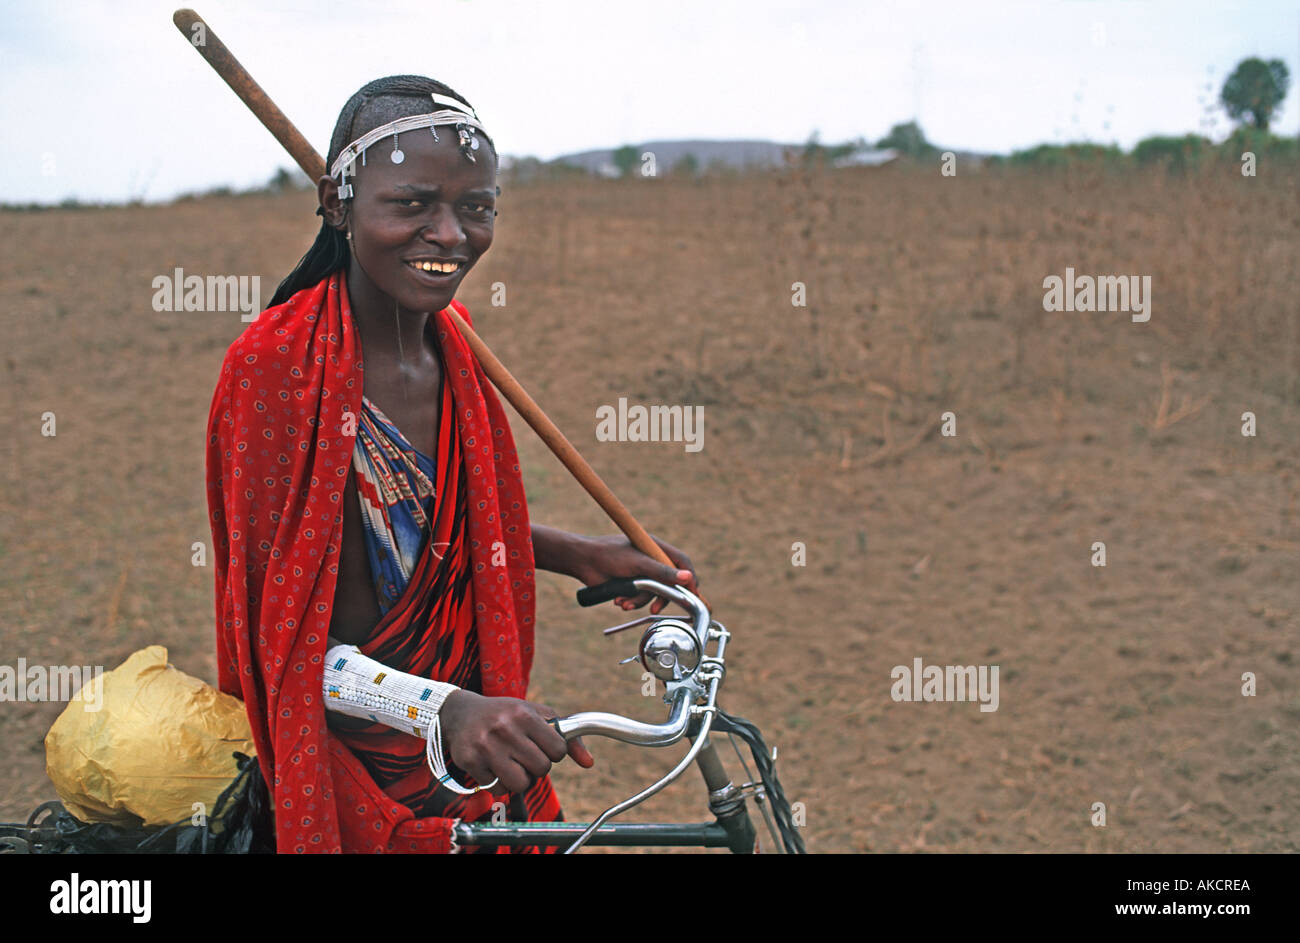 En guerrier Masai robe tribal fier propriétaire d'une location de terres tribales nr le marché aux bestiaux N de l'Afrique Tanzanie Arusha E Banque D'Images